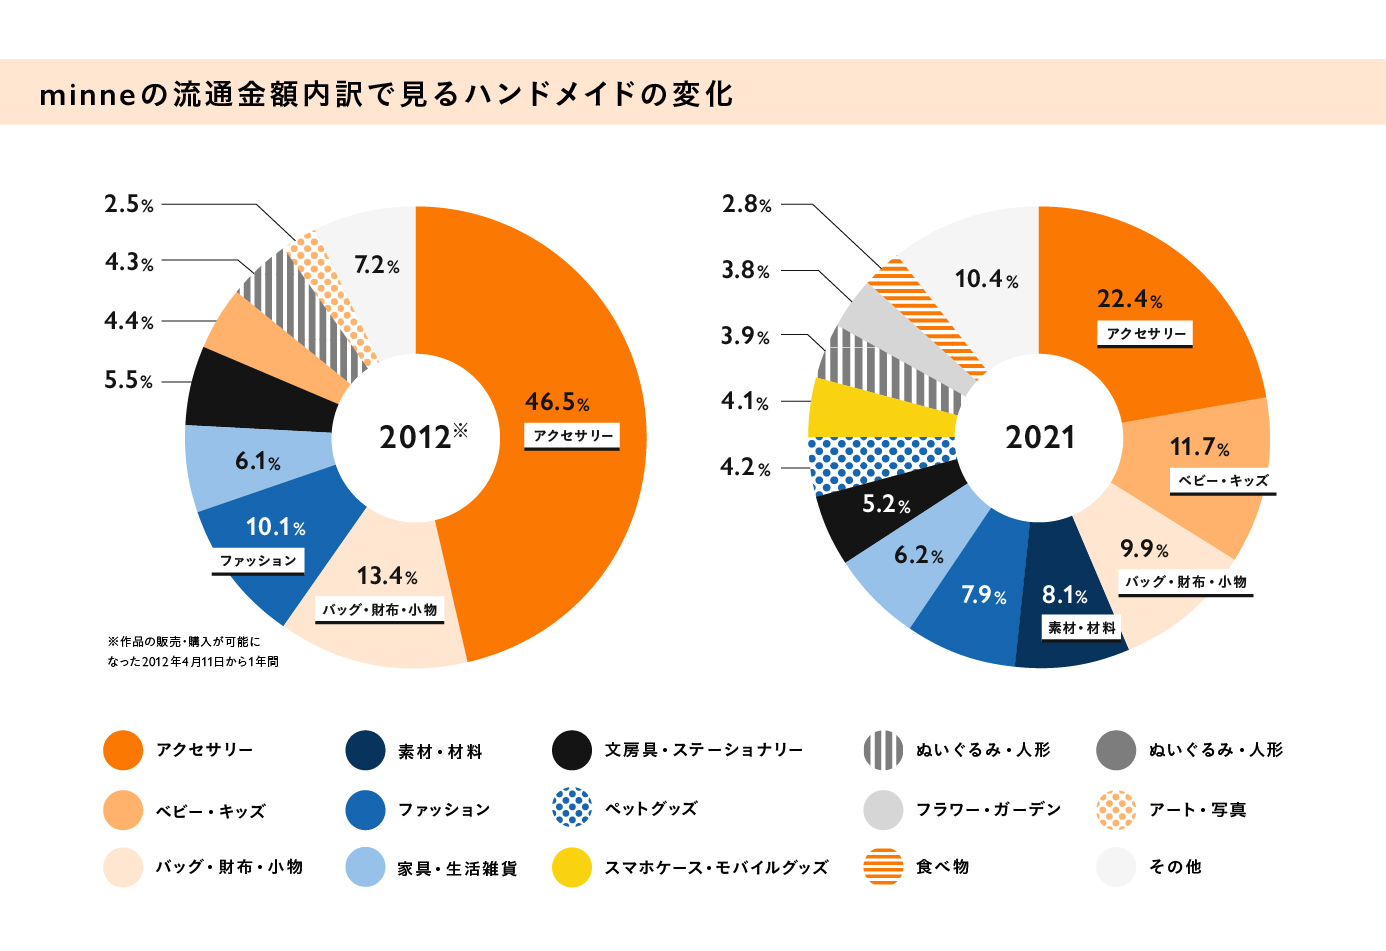 【グラフ】minneの流通金額内訳で見るハンドメイドの変化。2012年（※作品の販売・購入が可能になった2012年4月11日から1年間）と2021年の年間の流通金額内訳をカテゴリーごとにパーセンテージで表している。2012年の流通金額内訳はアクセサリー46.5％、バッグ・財布・小物が13.4％、ファッションが10.1％、家具・生活雑貨が6.1％、文房具・ステーショナリーが5.5％、ベビー・キッズが4.4％、ぬいぐるみ・人形が4.3％、アート・写真が2.5％、その他7.2％。2022年の流通金額内訳はアクセサリーが22.4％、ベビー・キッズが11.7％、バッグ・財布・小物が9.9％、素材・材料が8.1％、ファッションが7.9％、家具・生活雑貨が6.2％、文房具・ステーショナリーが5.2％、、ペットグッズが4.2％、スマホケース・モバイルグッズが4.1％、ぬいぐるみ・人形が3.9％、フラワー・ガーデンが3.8％、食べ物が2.8％、その他10.4％。